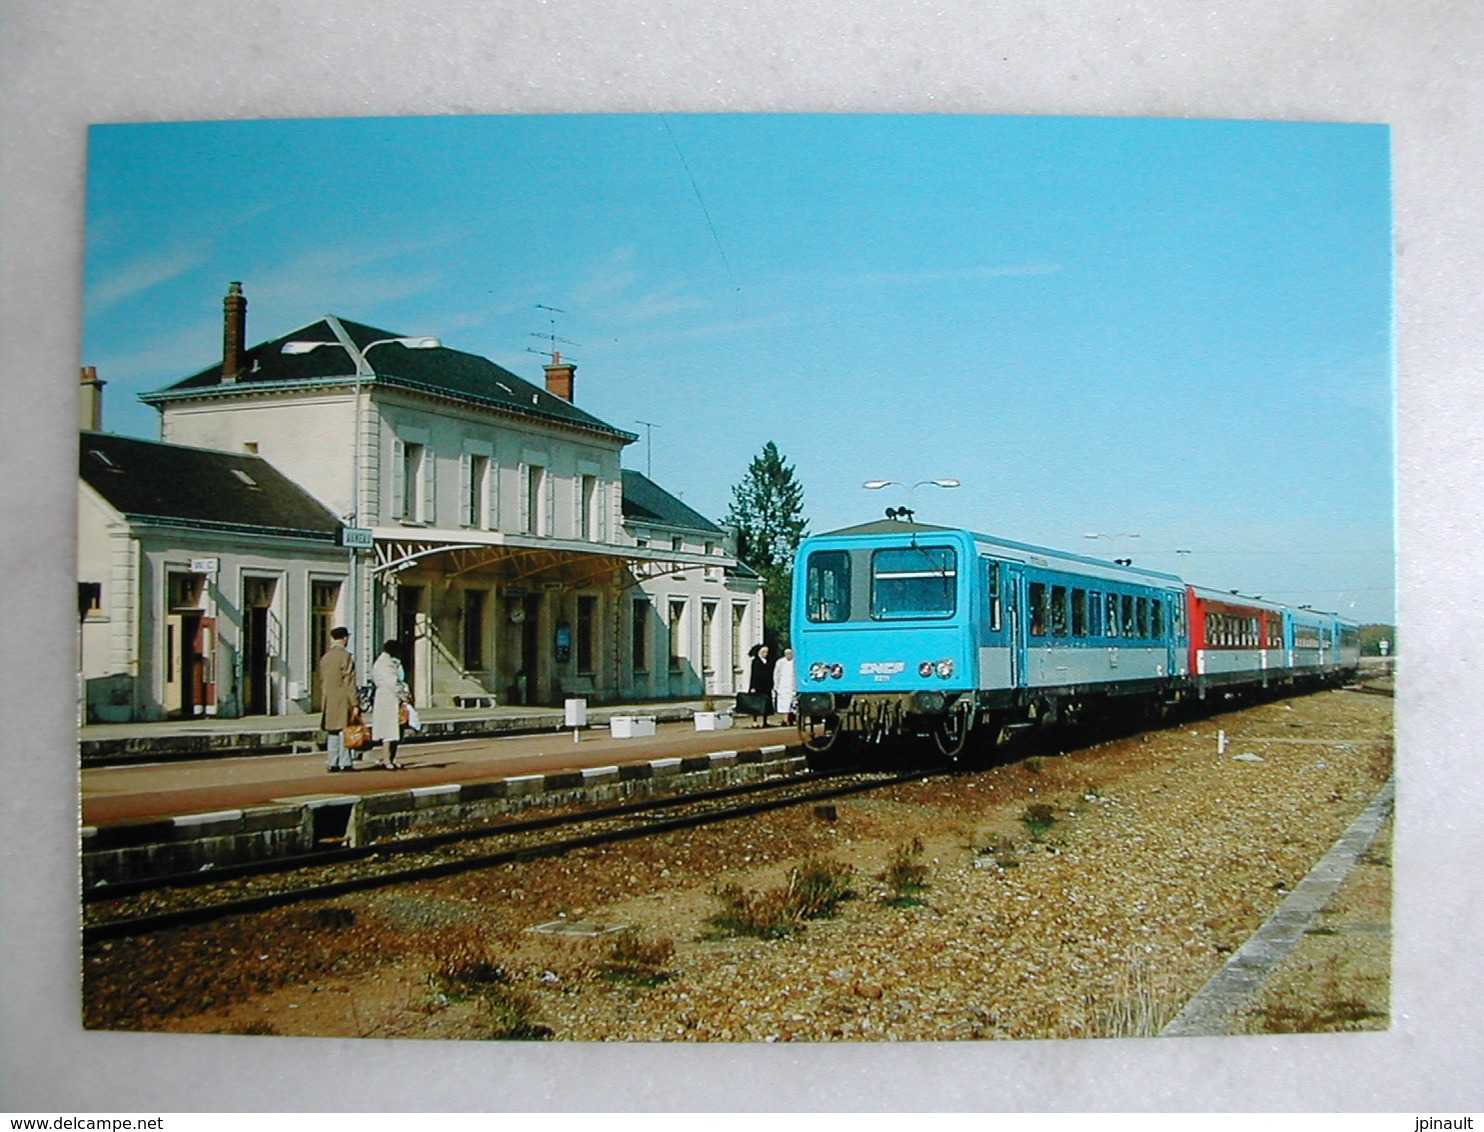 LOT de 50 CPM - Thème FERROVIAIRE - Trains et locomotives de tous types et âges (voyageurs ; marchandises ; loisirs)